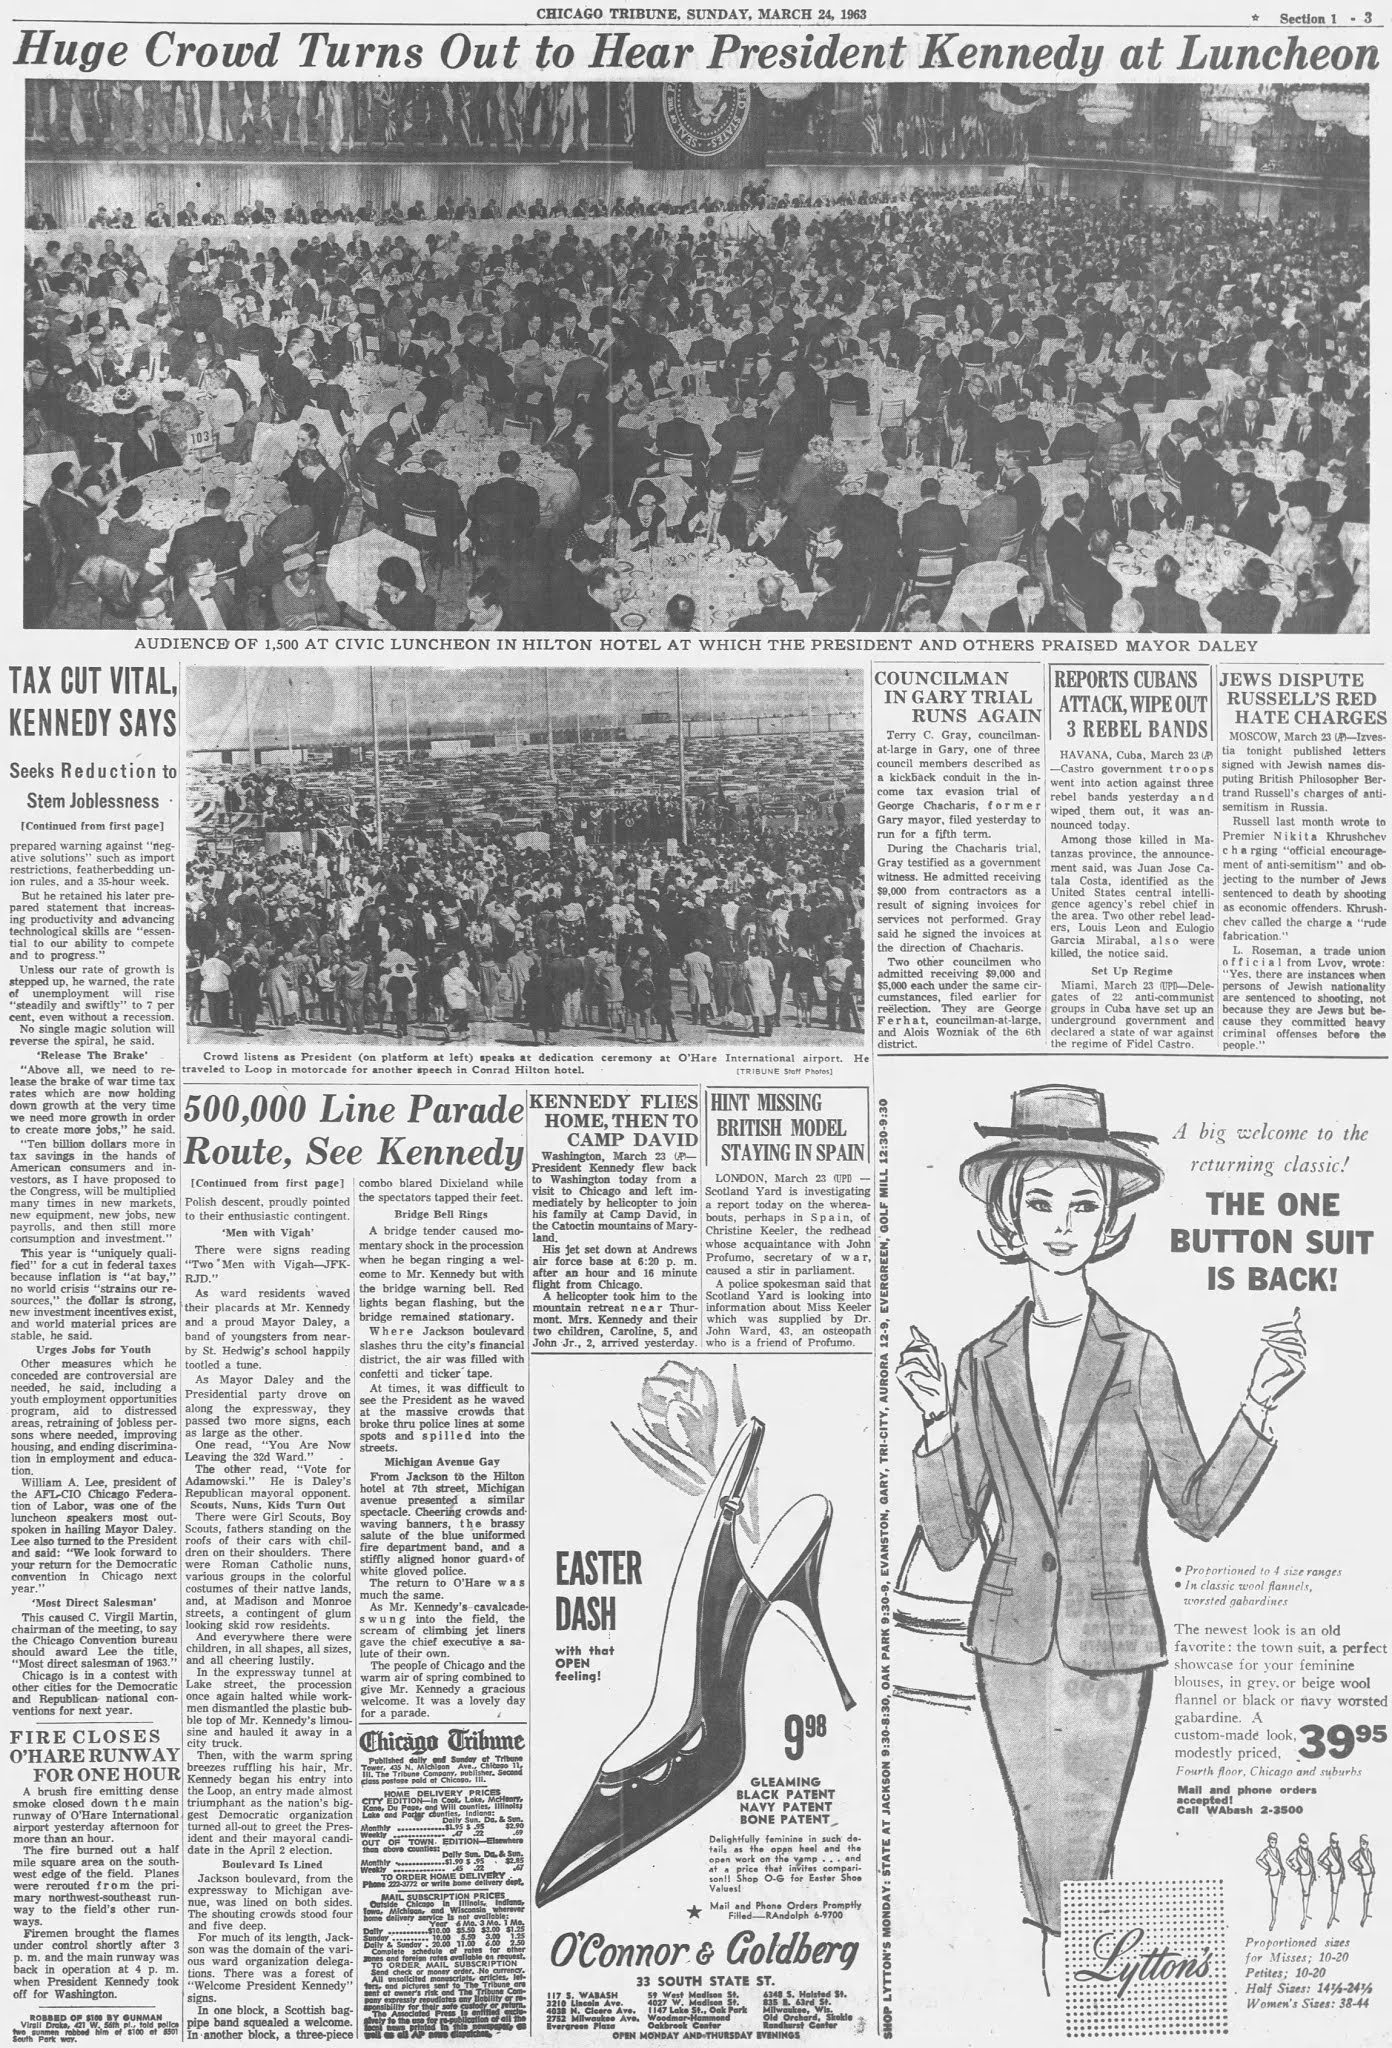 Chicago-Tribune-March-24-1963---02.jpg